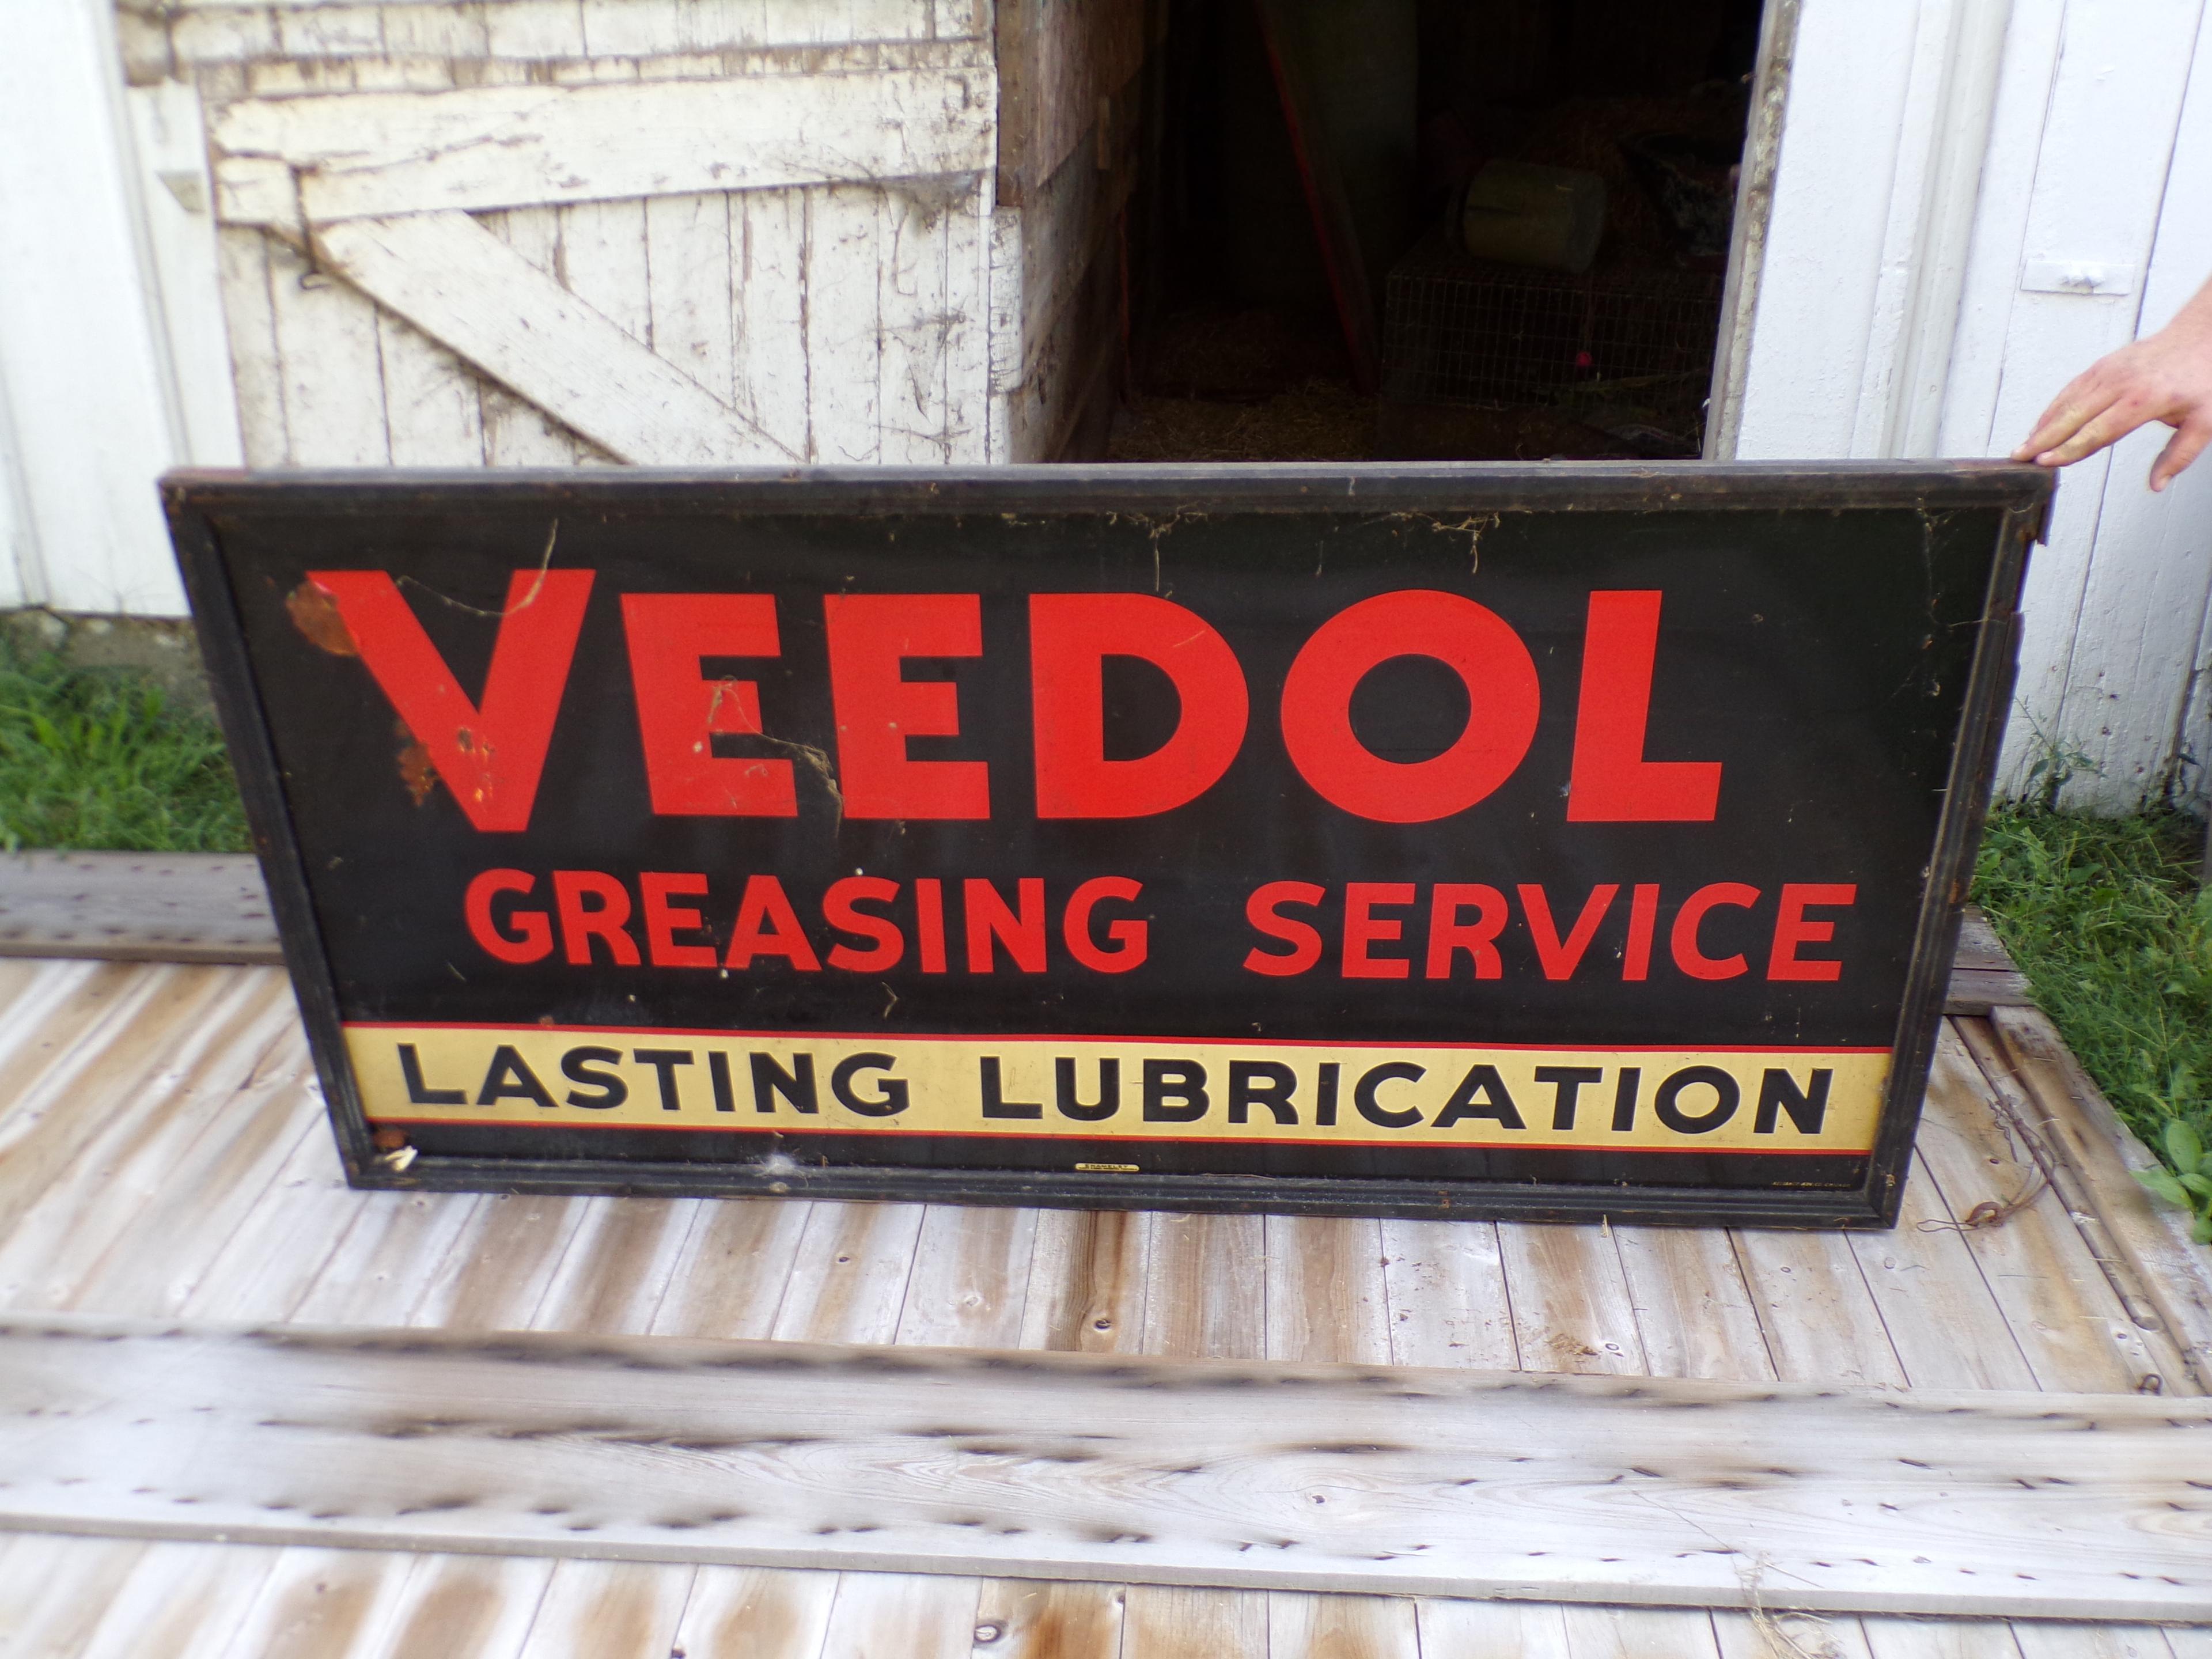 Veedol "Lasting Lubrication"